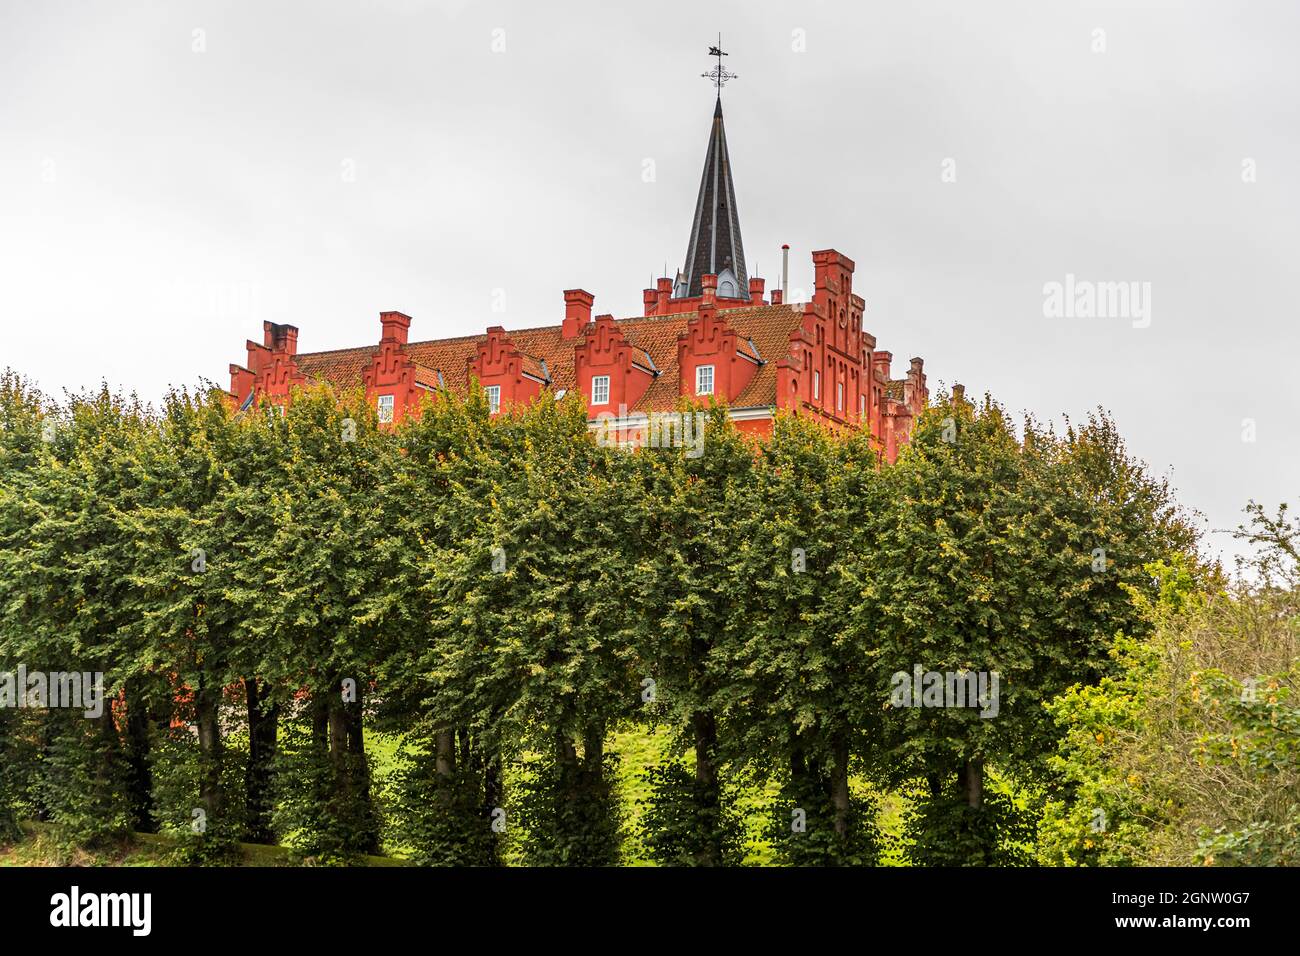 Le château de Tranekær est rouge dans le parc. Le château existe sur ce site depuis le XIIIe siècle et a été utilisé comme résidence officielle par les fonctionnaires du roi danois sur l'île de Langeland, au Danemark Banque D'Images